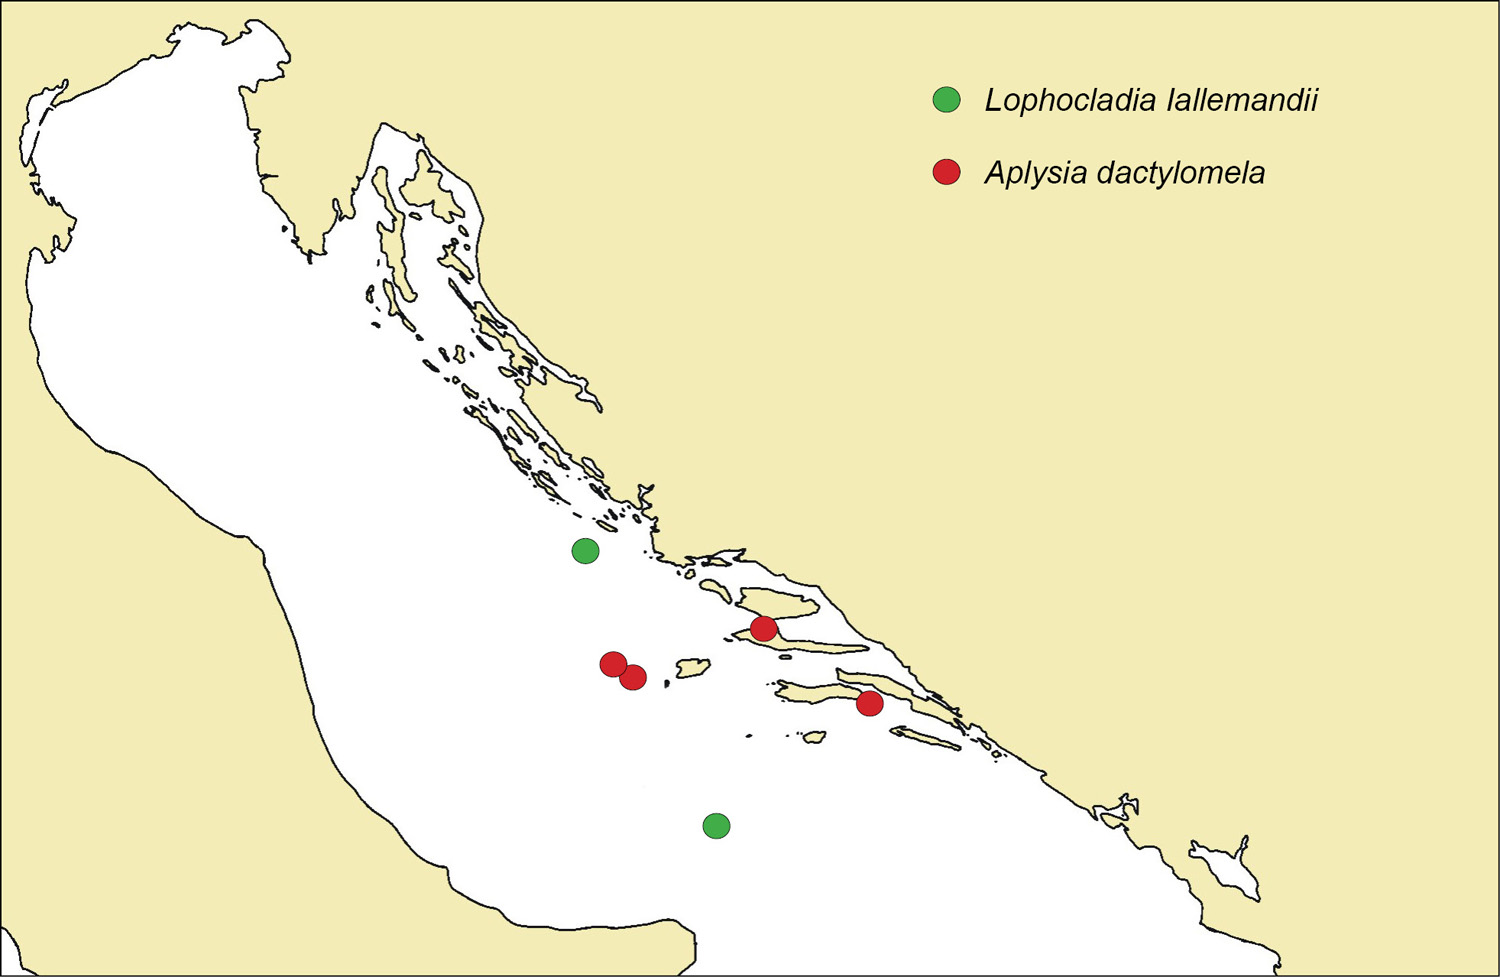 1 Nalazita invazivne alge Lophocladia Iallemandii i pua crnokrugog zekana Aplysia dactylomela tijekom 2012. godine.